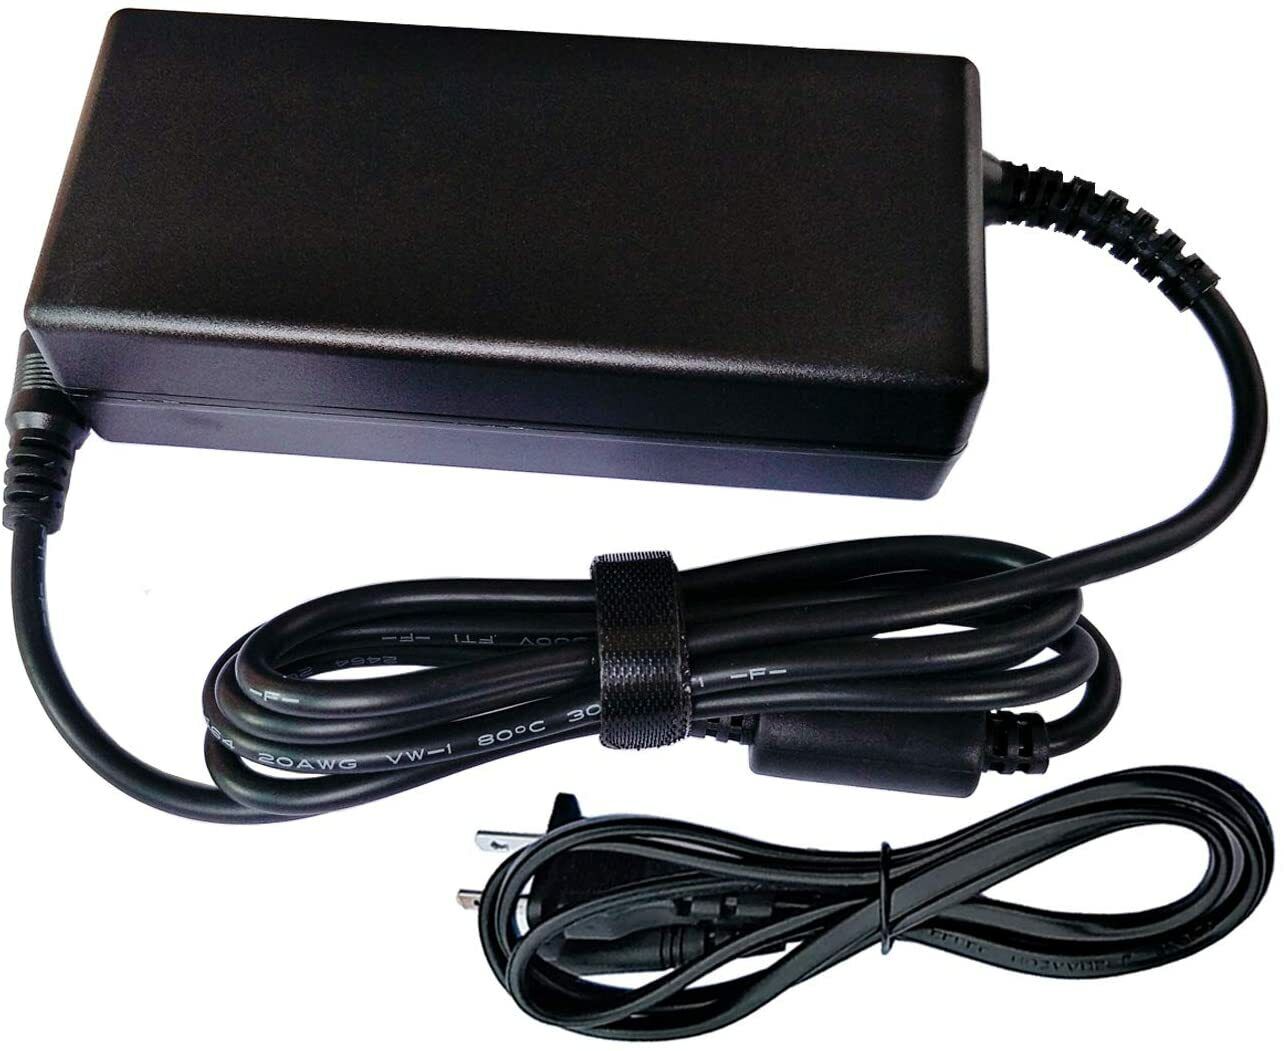 12V 4A DC Adapter for Buffalo LinkStation 220 LS220D0202 LS220D0402 LS220D0802